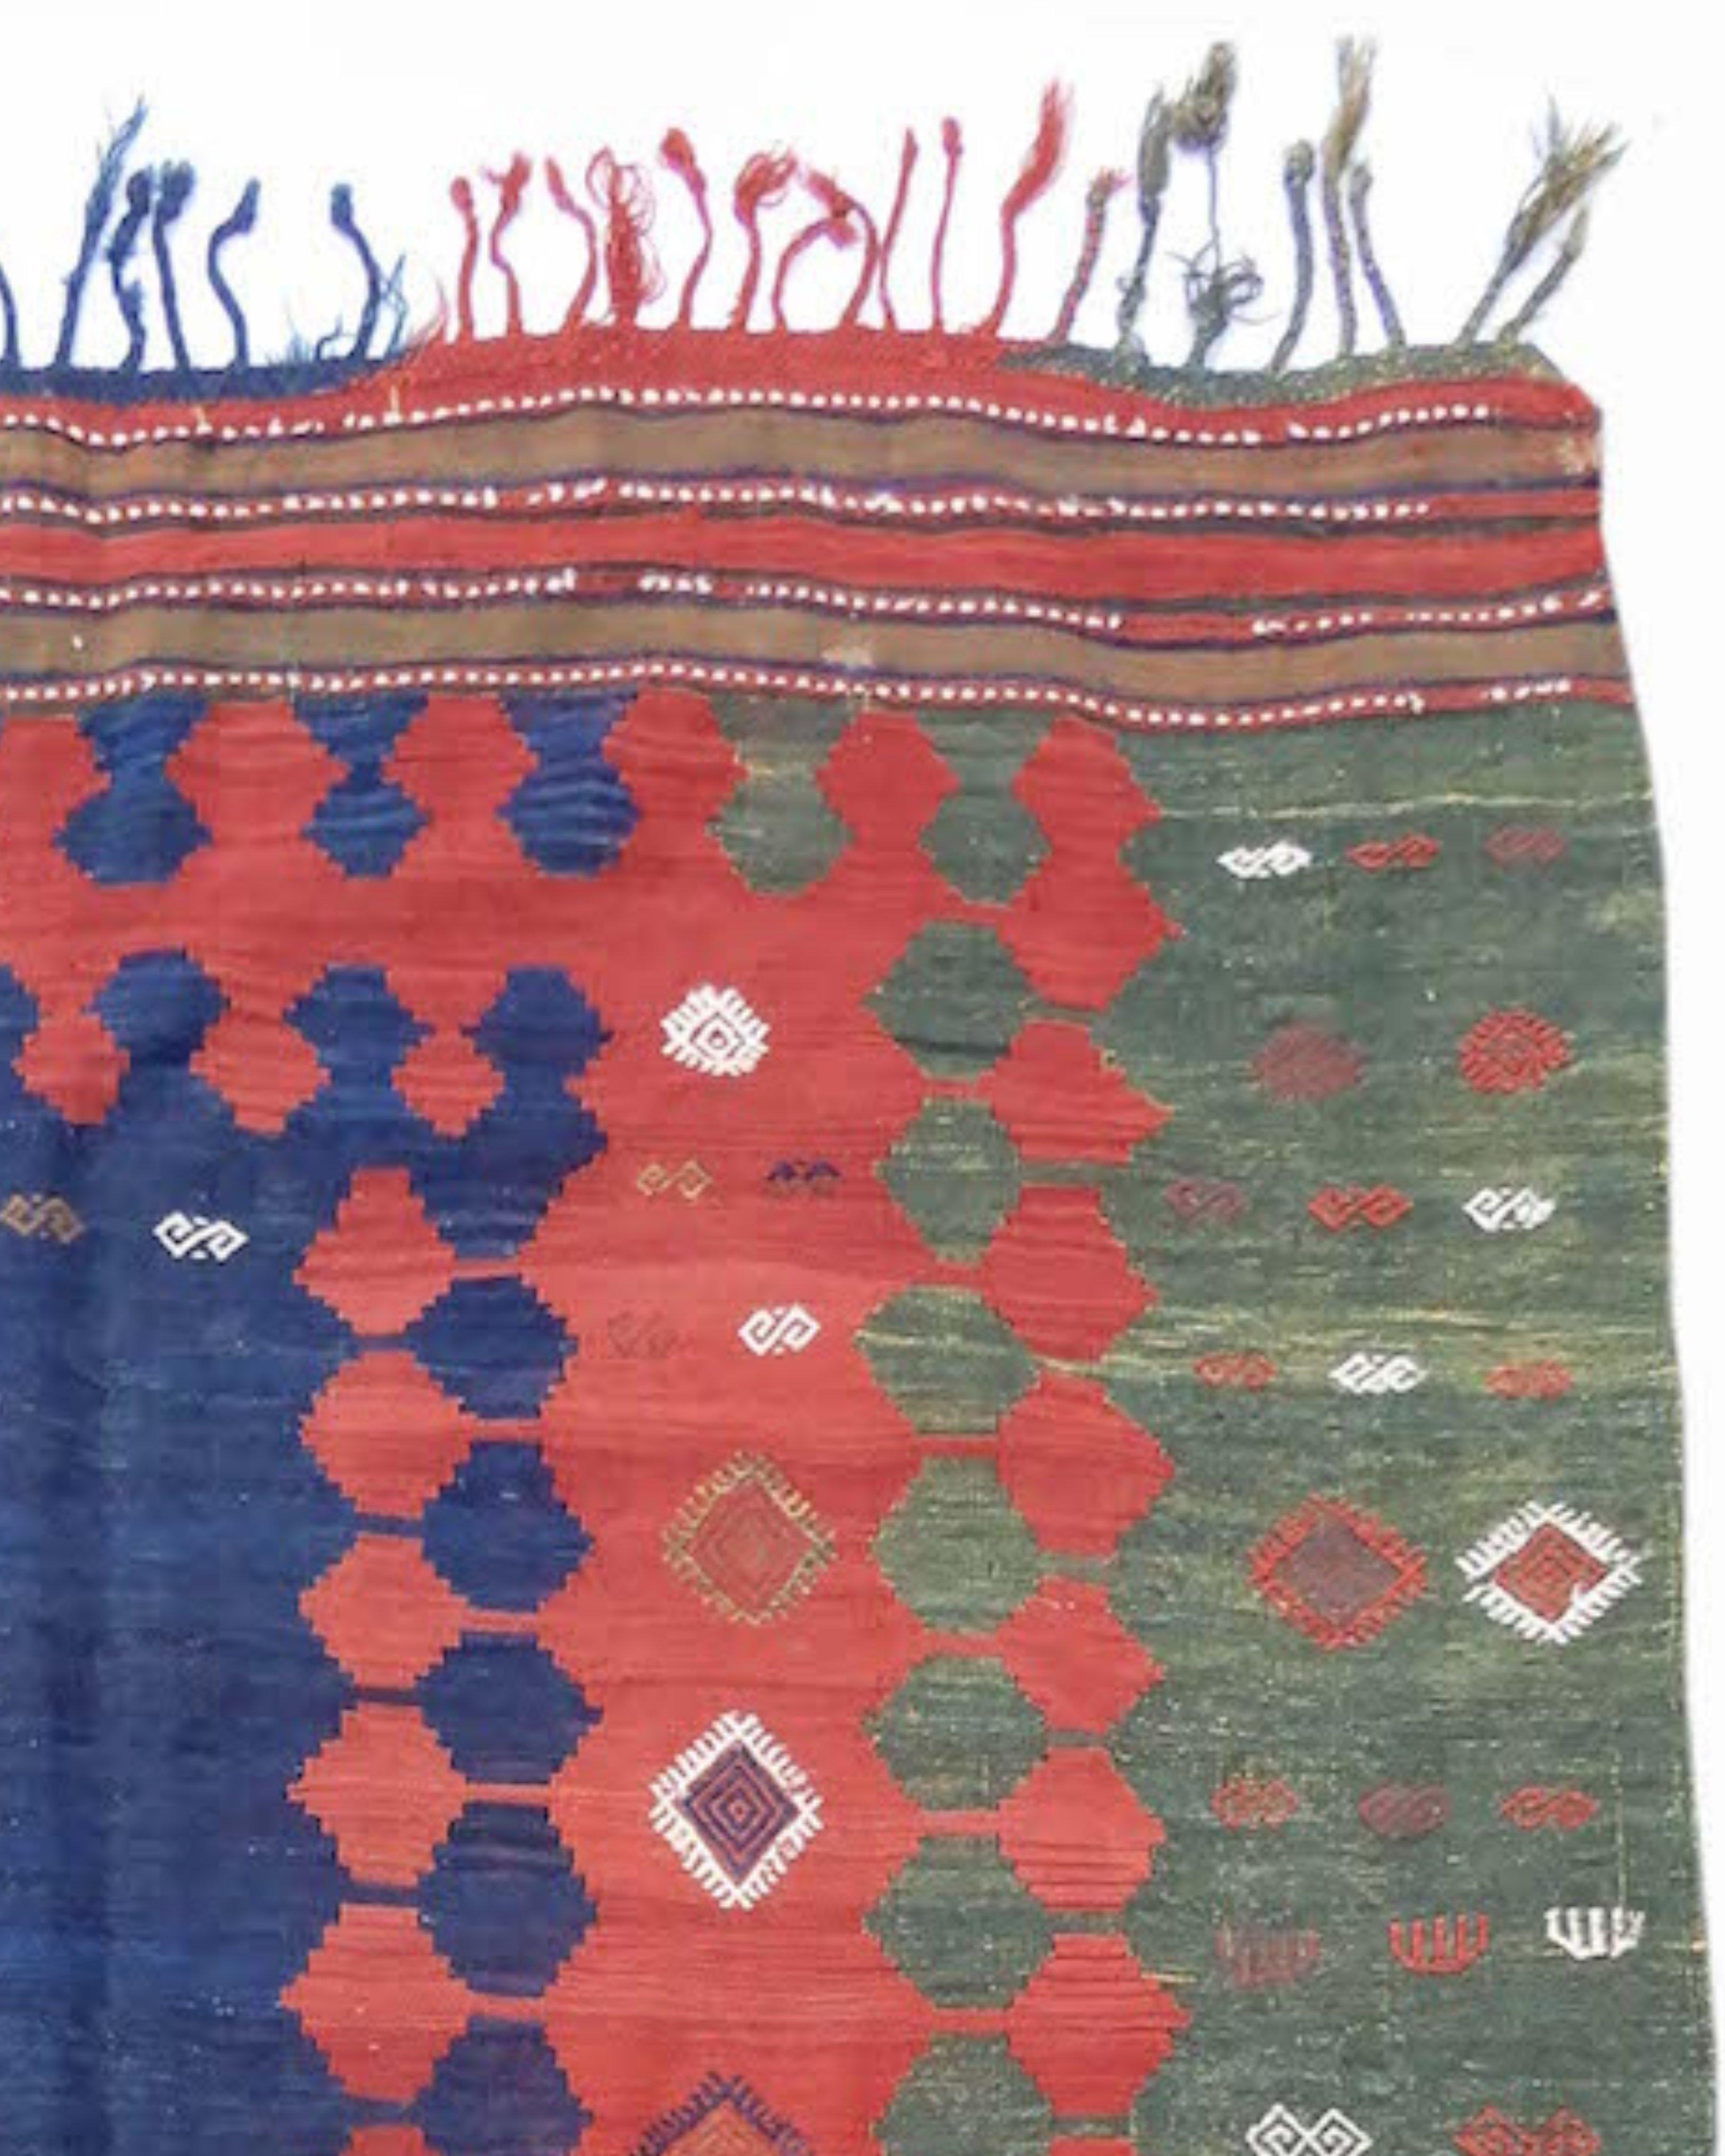 Rug & Kilim Shahsevan, fin du 19e siècle

Ce kilim très graphique de Shahsevan associe des motifs répétitifs réciproques à des couleurs saturées et contrastées. La structure des différentes techniques de tissage plat permet au tisserand de générer